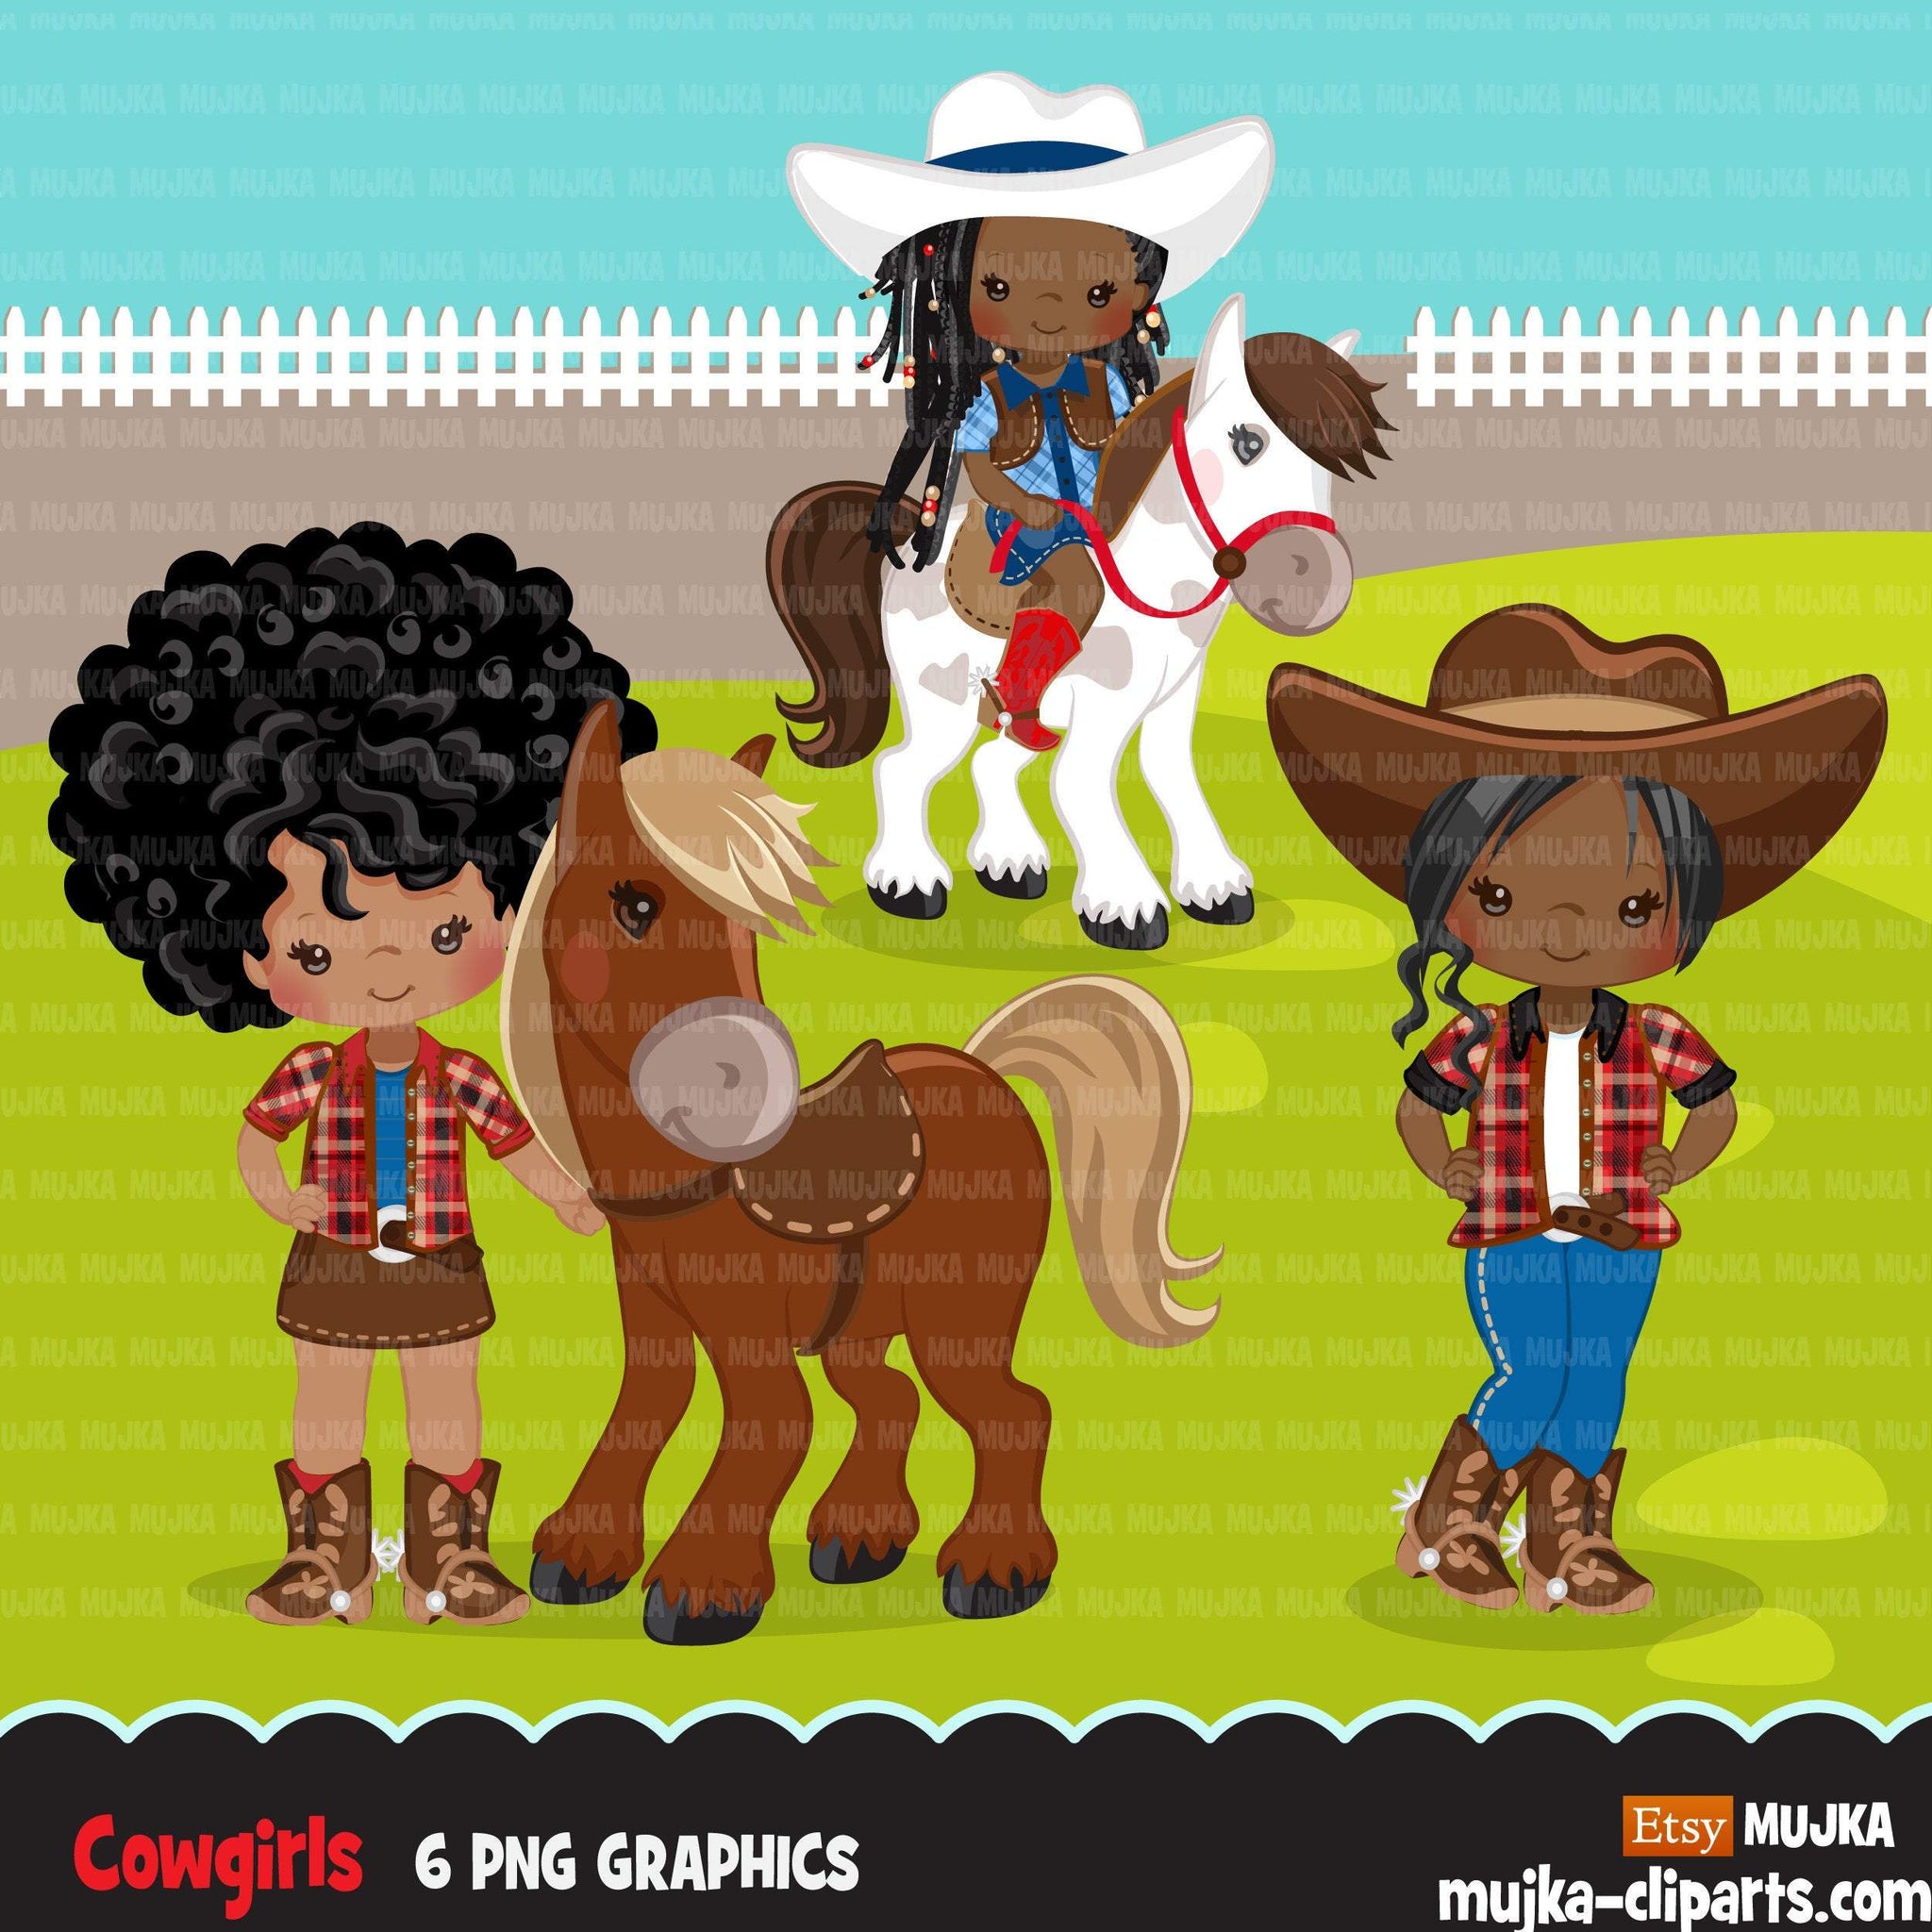 Afro Cowgirl com clipart de cavalo, personagens de fazendeiros, gráficos de fazenda rural, clipart de garota do oeste selvagem